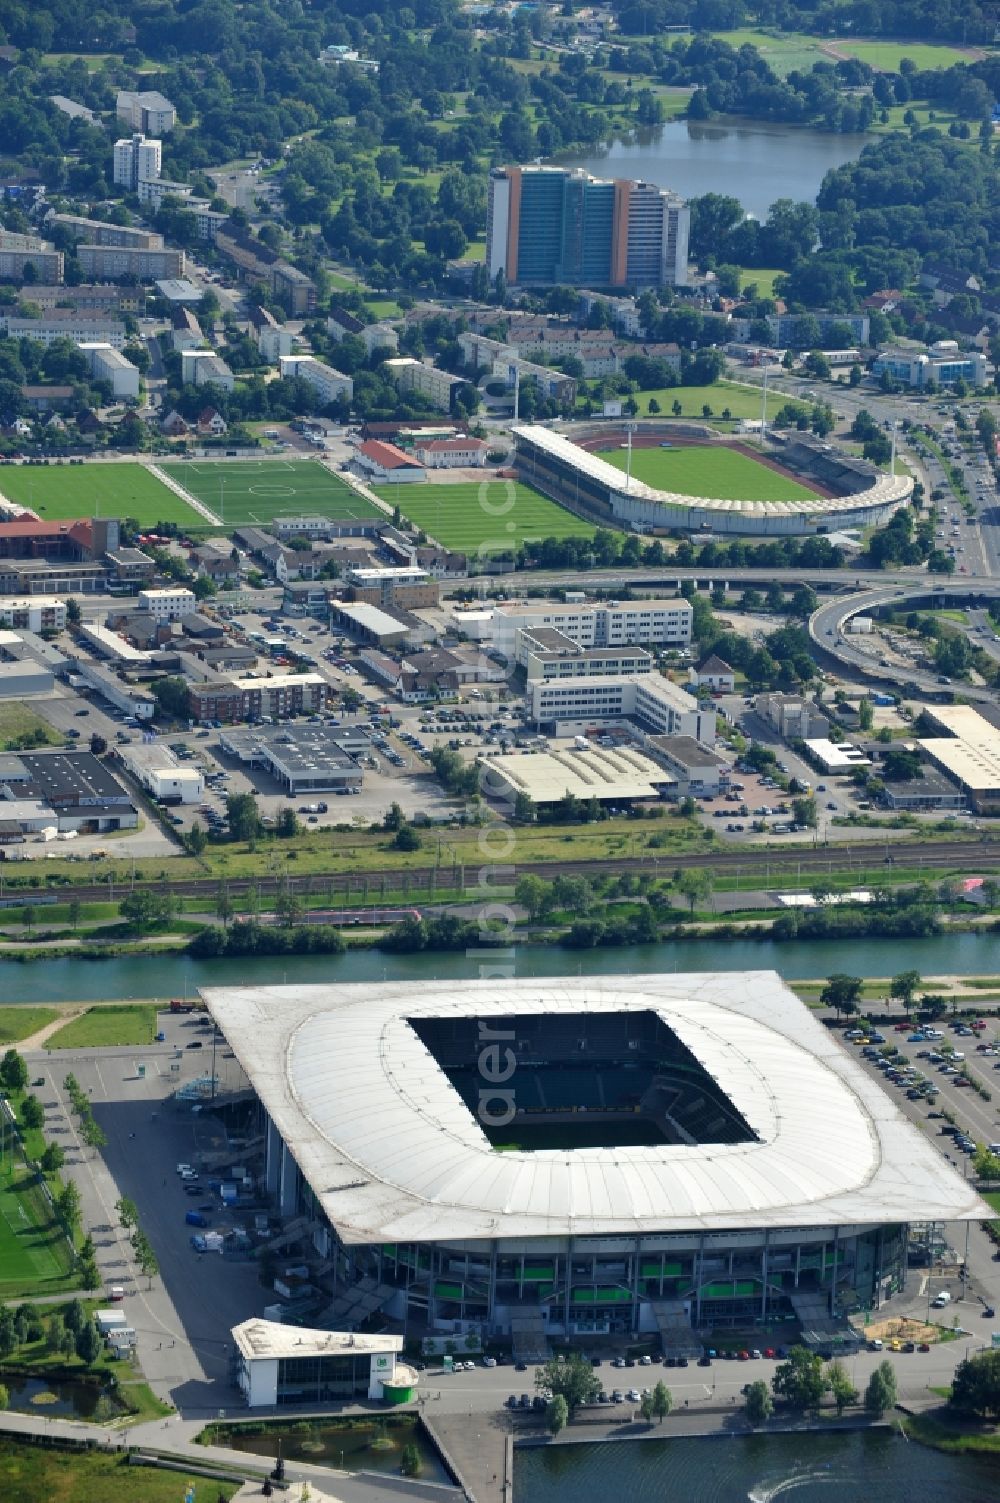 Wolfsburg from the bird's eye view: View of the Volkswagen Arena in Wolfsburg Allerwiese 1 in 38 446. The modern stadium is home to VfL Wolfsburg